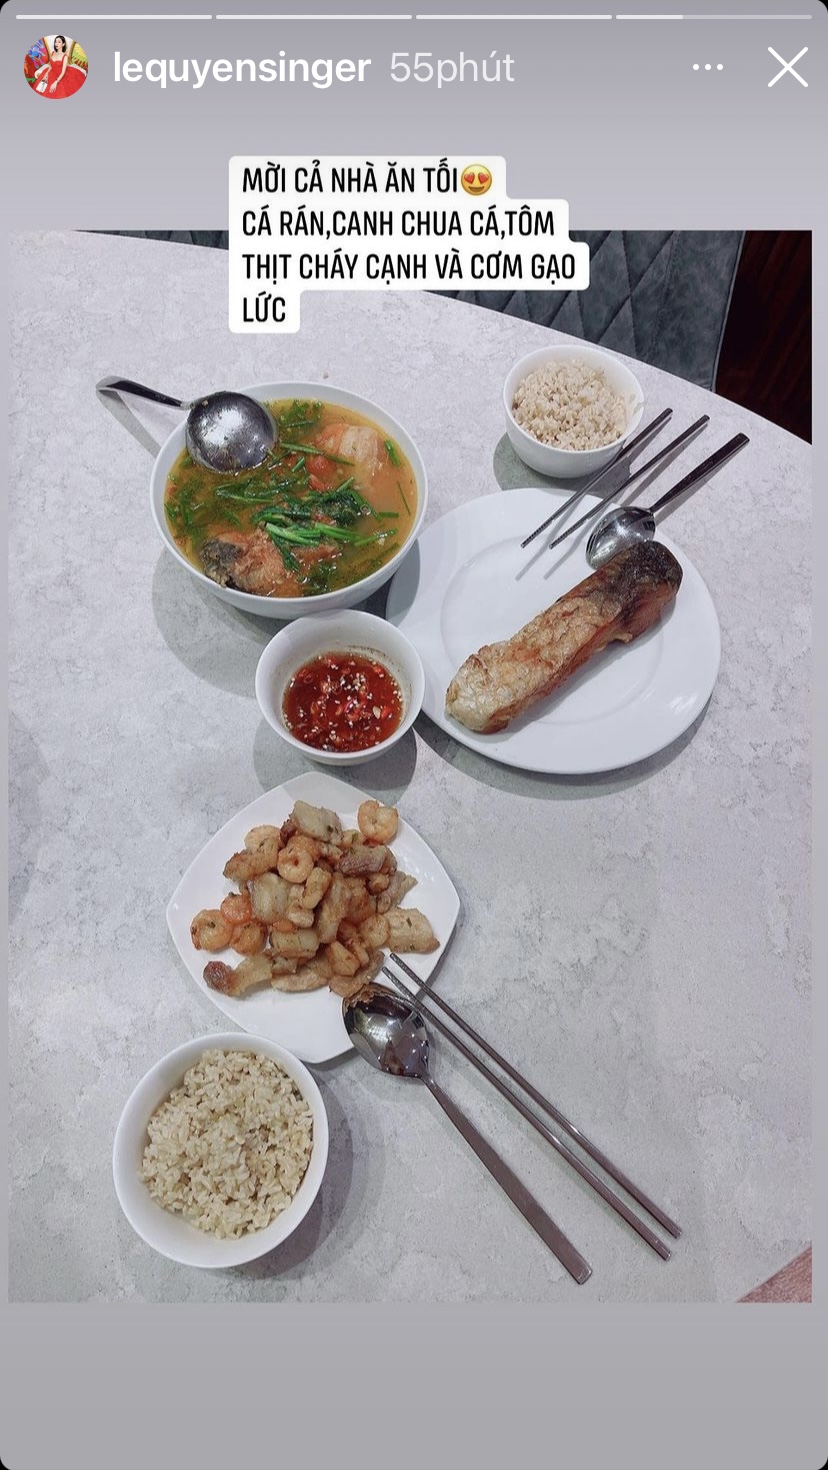 Bữa tối của Lệ Quyên là món cá rán, canh chua cá, tôm thịt rang cháy cạnh và cơm gạo lứt.